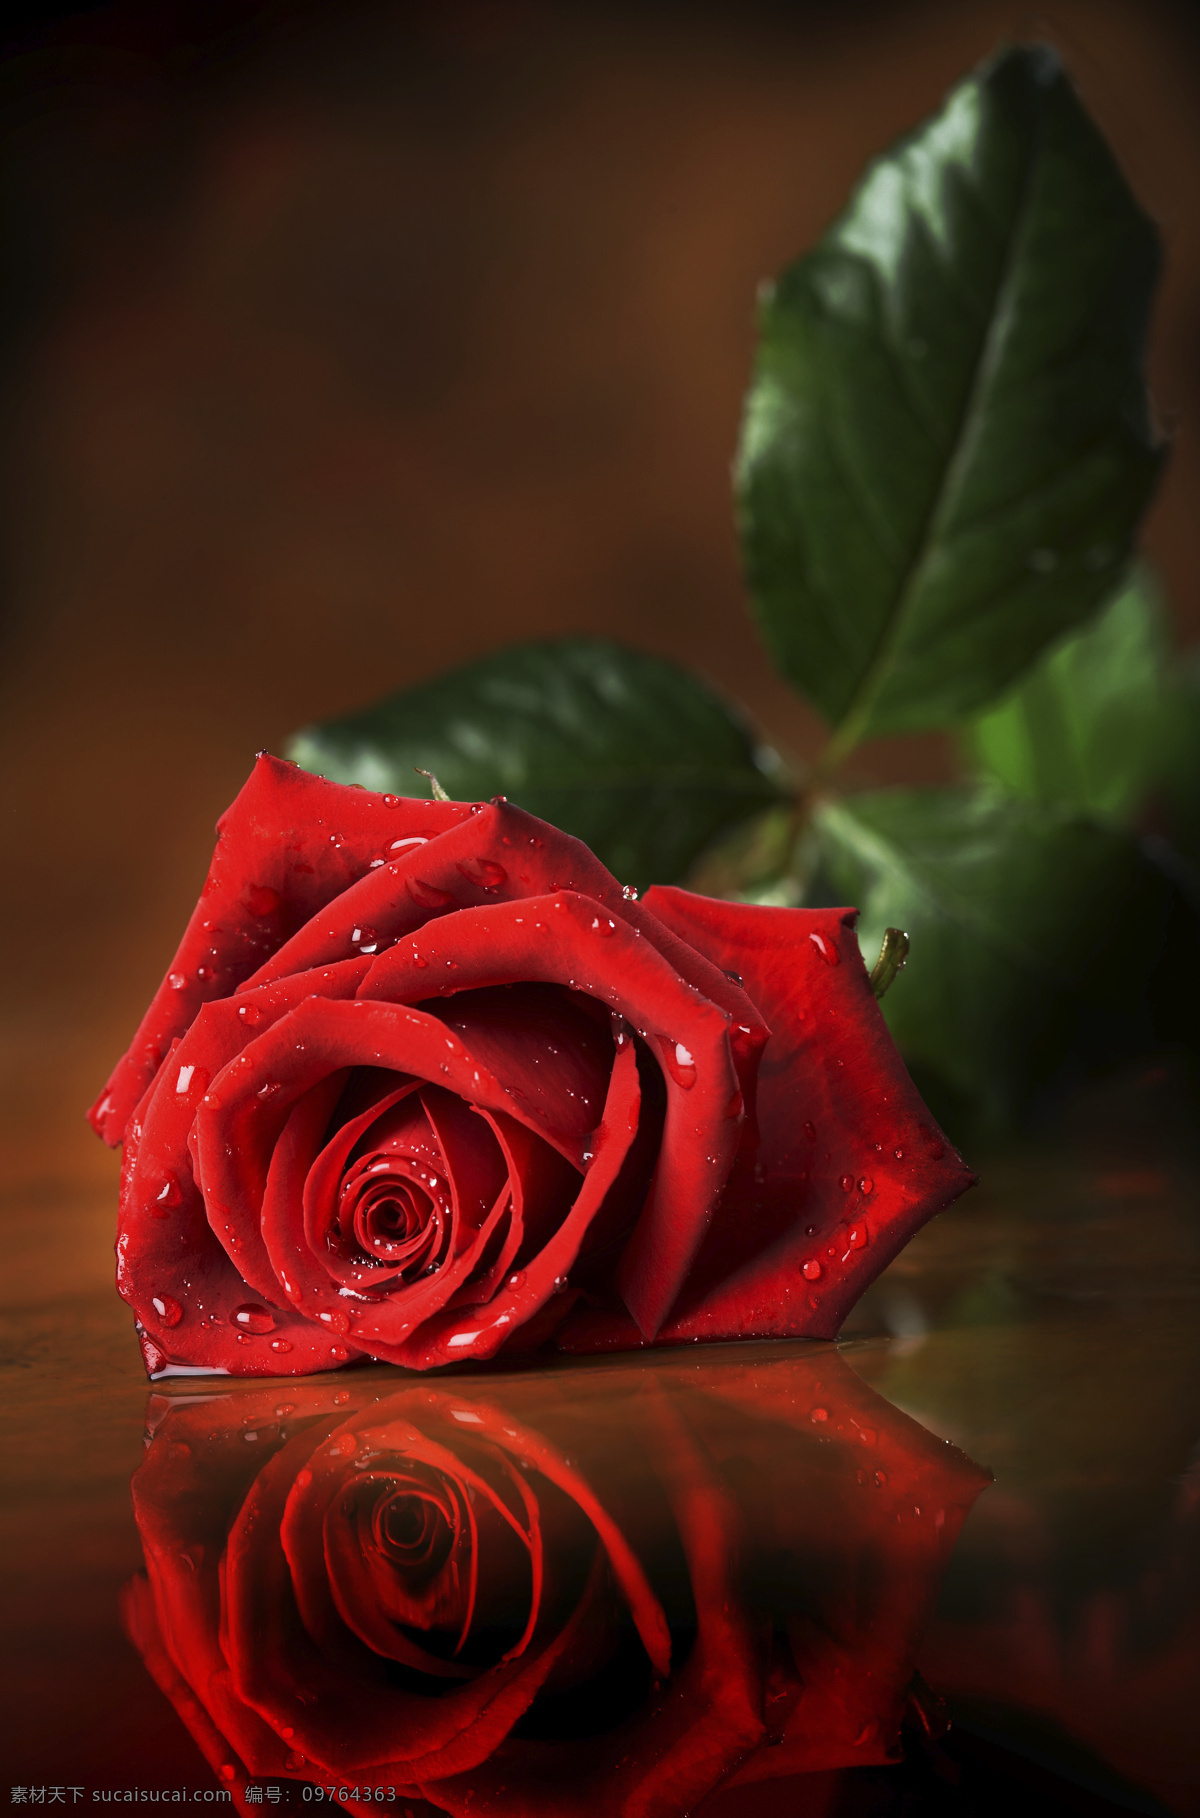 玫瑰花 素材图片 叶子 植物 水滴 花朵 鲜花 浪漫 温馨 节日庆典 生活百科